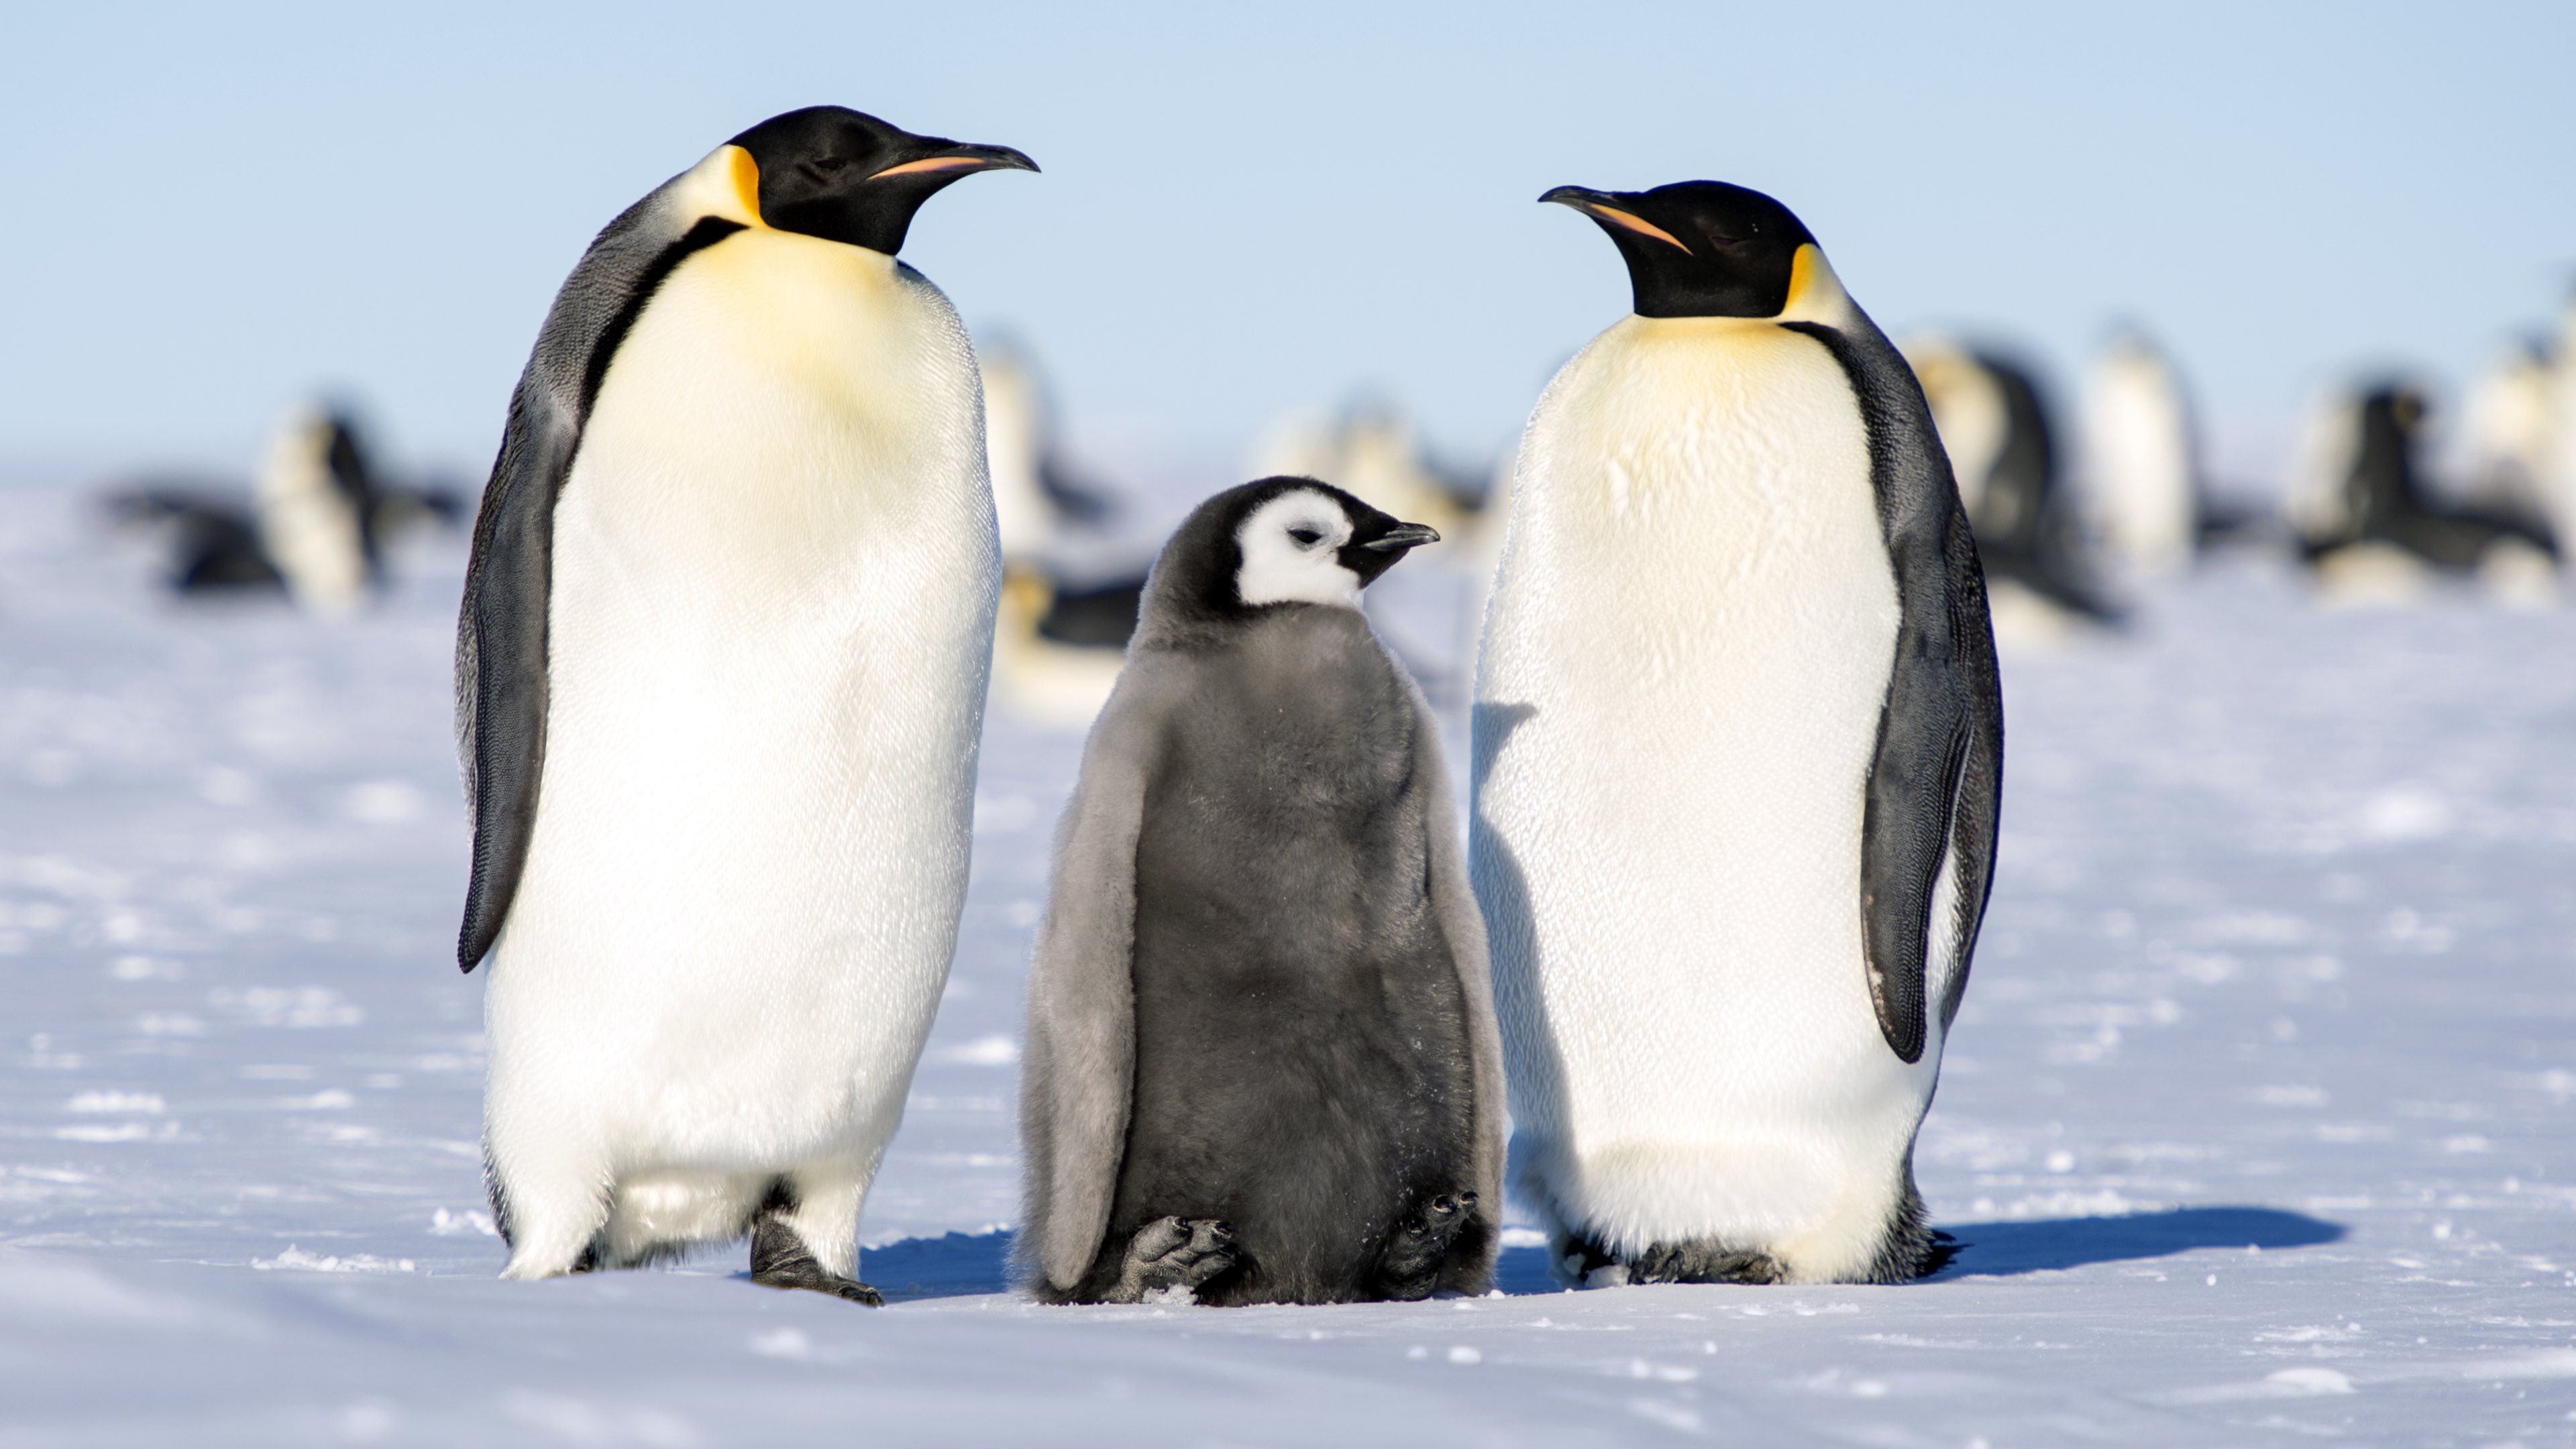 Tổng hợp các hình ảnh về chim cánh cụt dễ thương – Đặc điểm của loài chim cánh cụt - [Kích thước hình ảnh: 3840x2160 px]